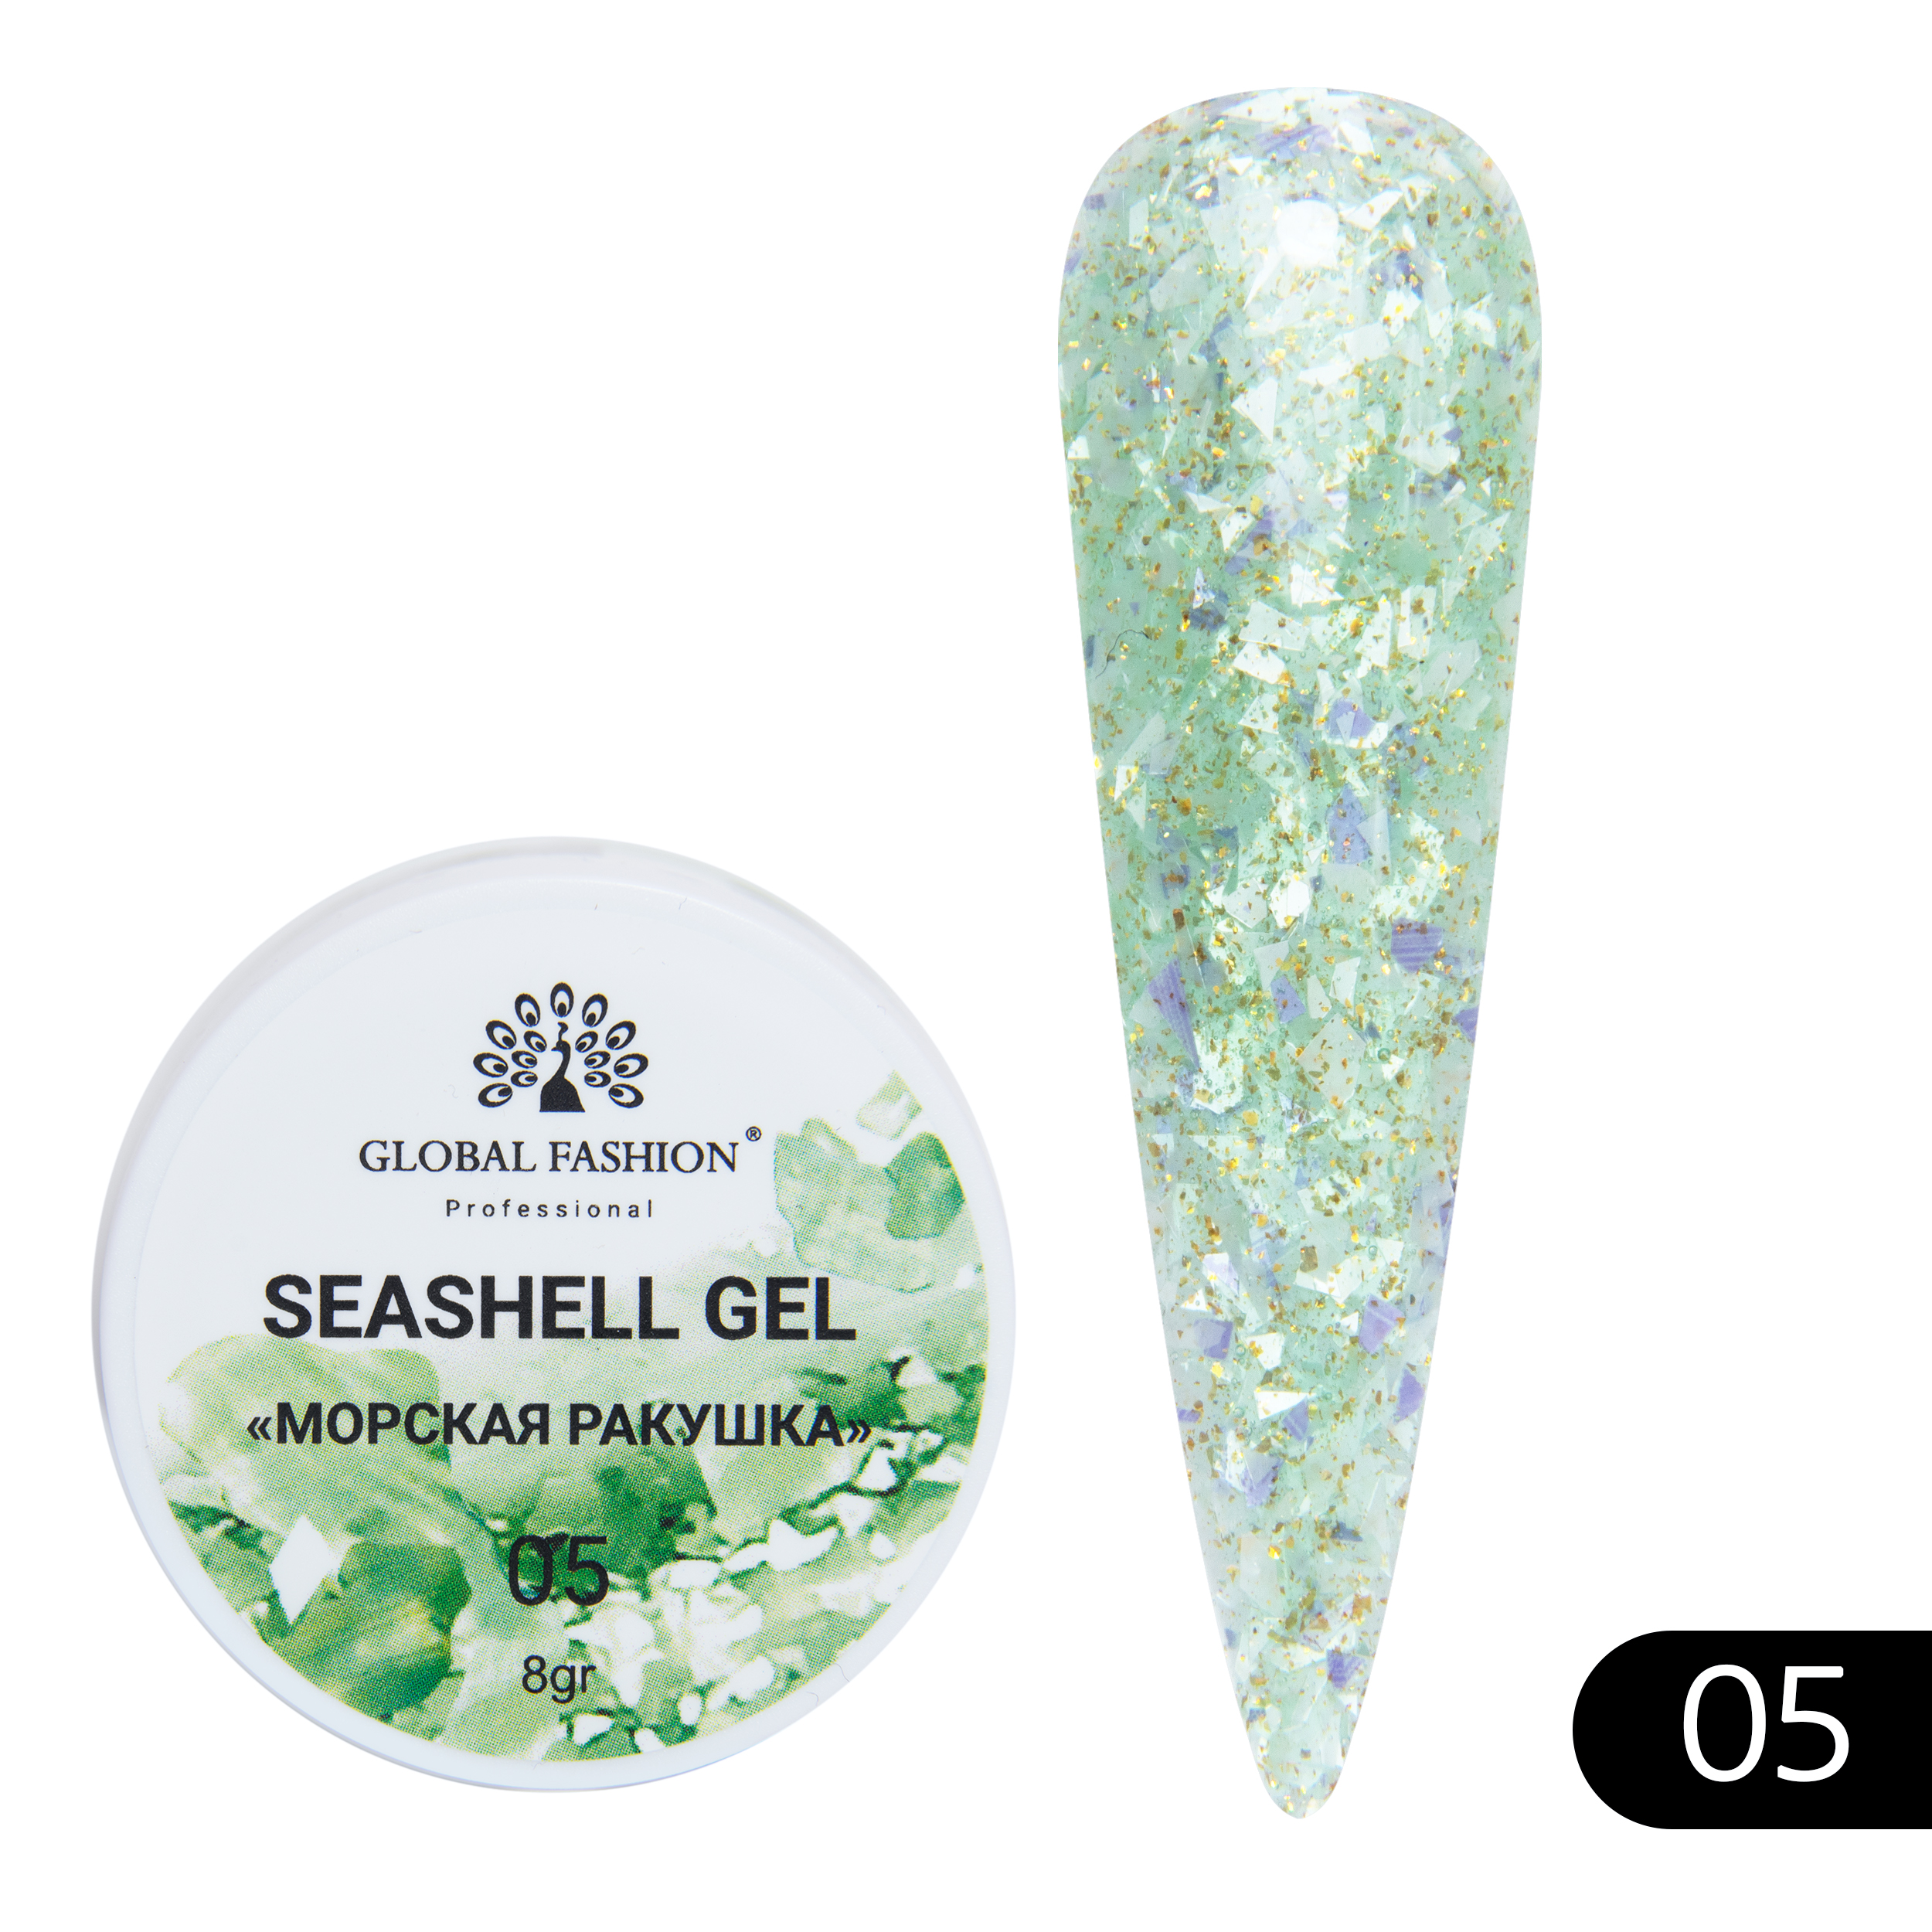 Гель-краска для ногтей Global Fashion с мраморным эффектом ракушки Seashell Gel №05 5 г закон ракушки